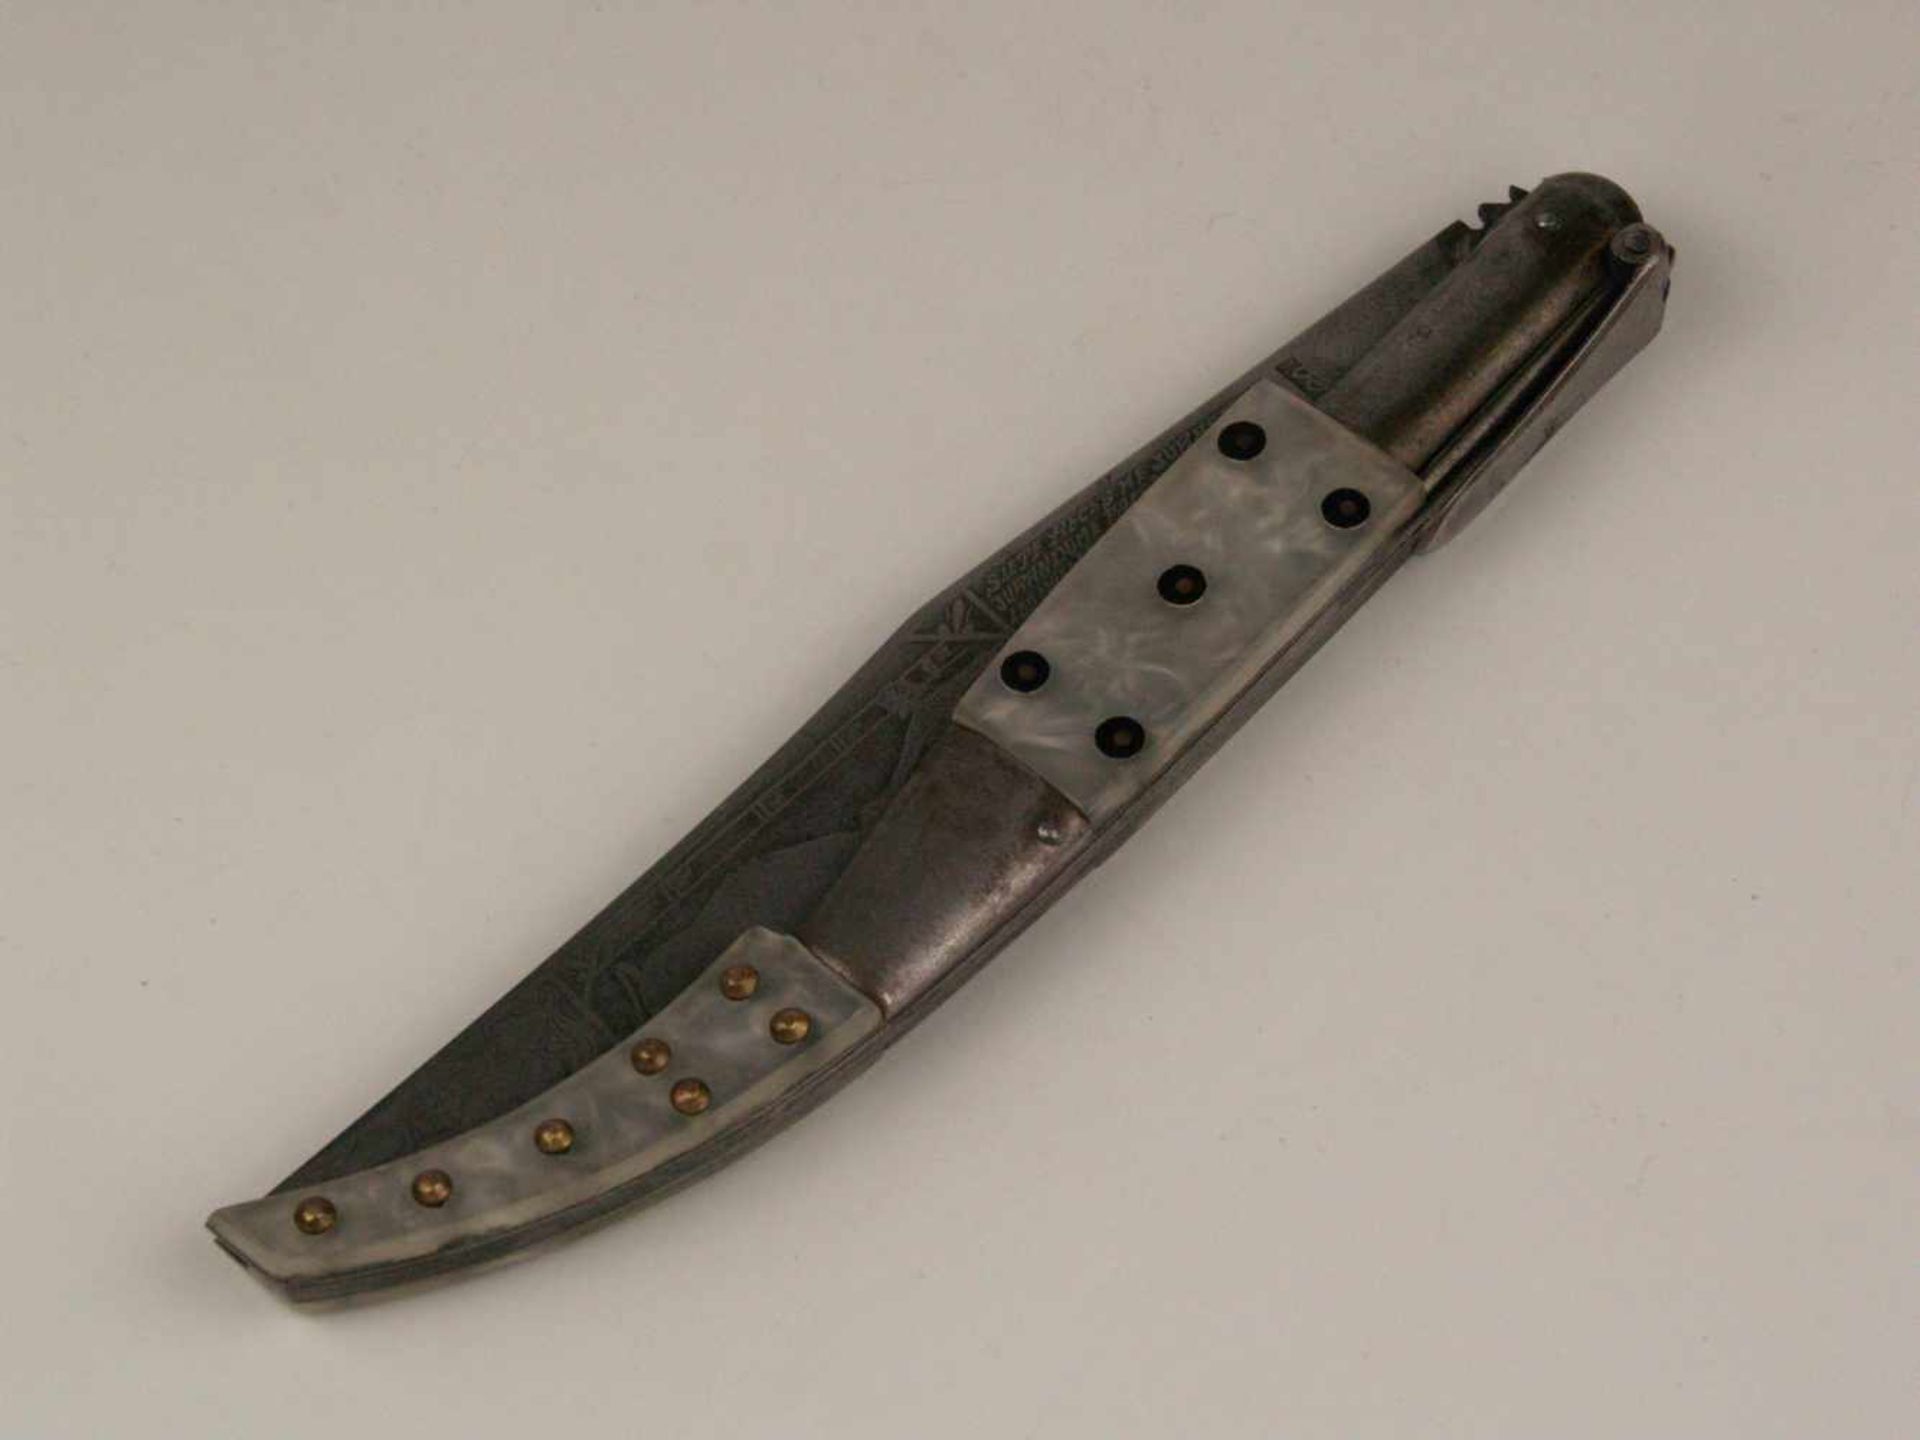 Navaja - Messer, Spanien um 1920, breite spitz zulaufende Klinge graviert mit Stierkampfszene,